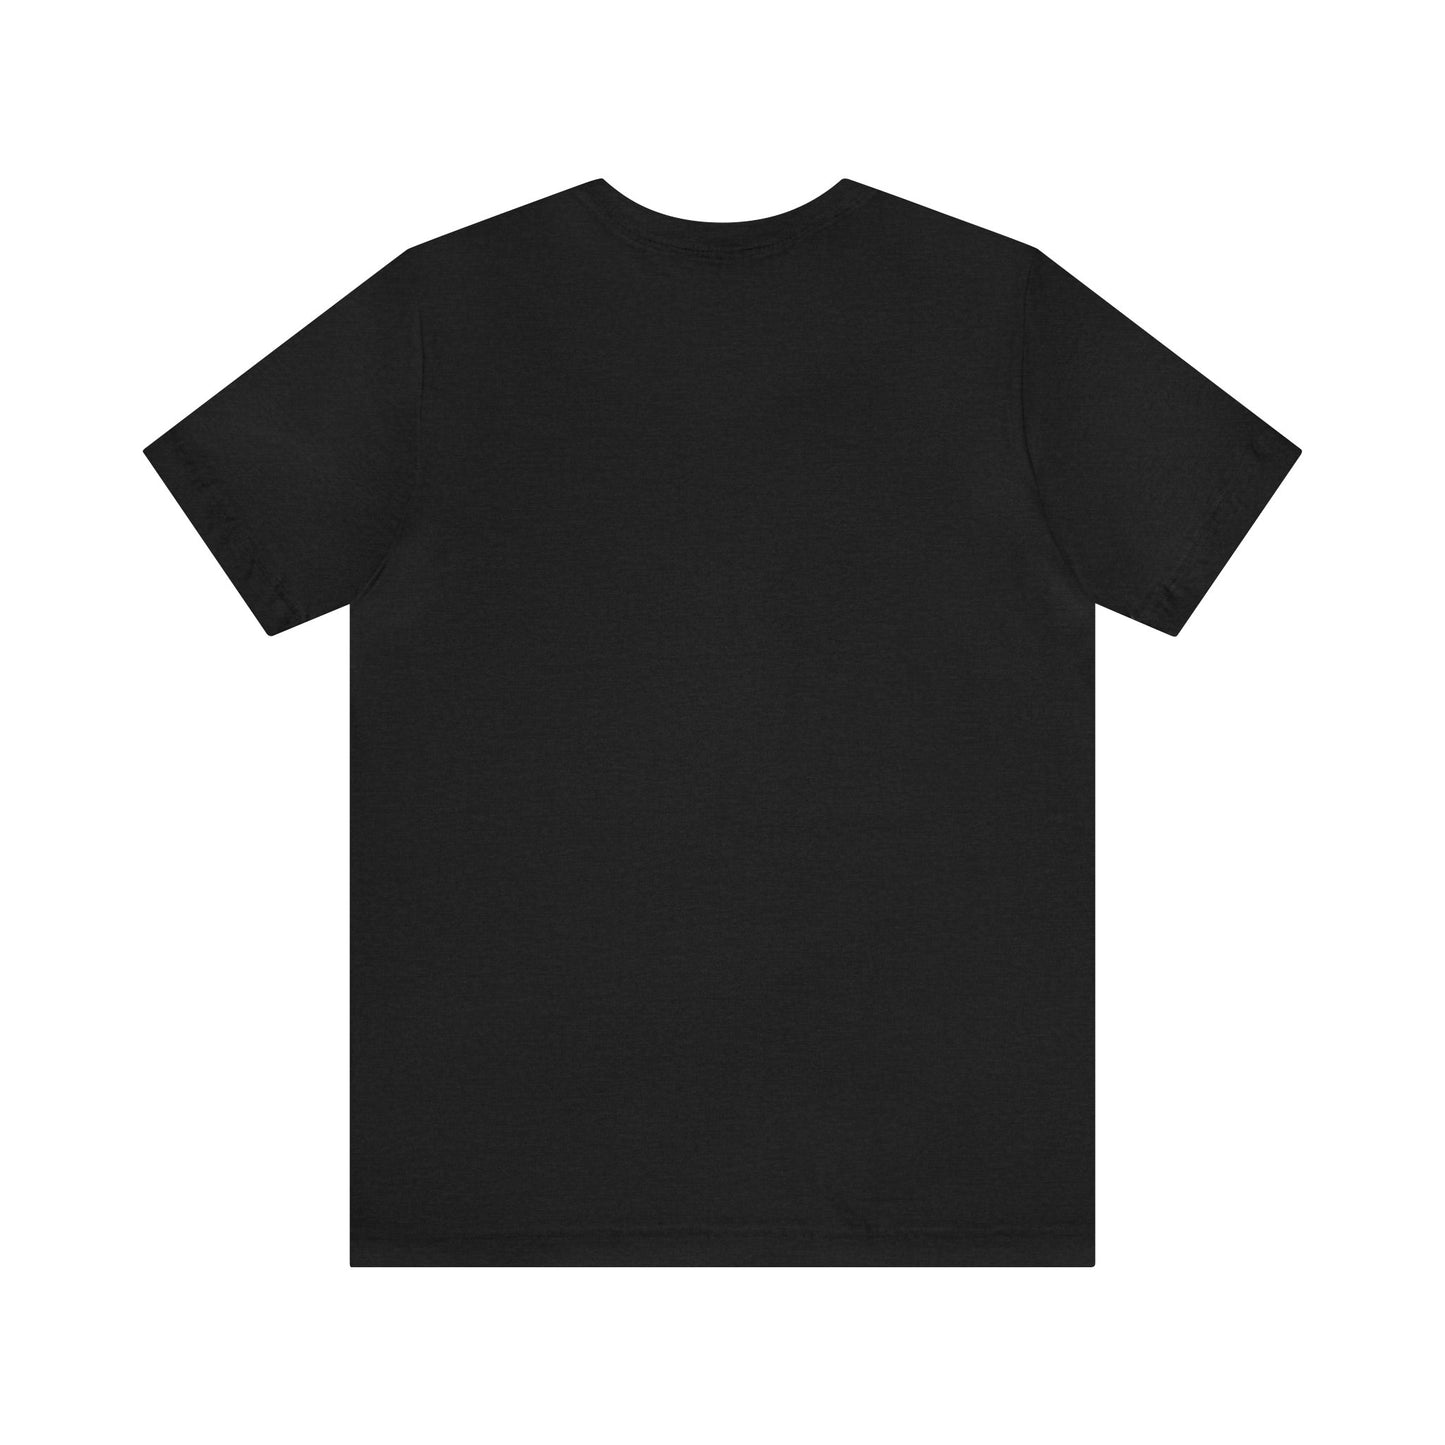 Edmonds Husky T-shirt